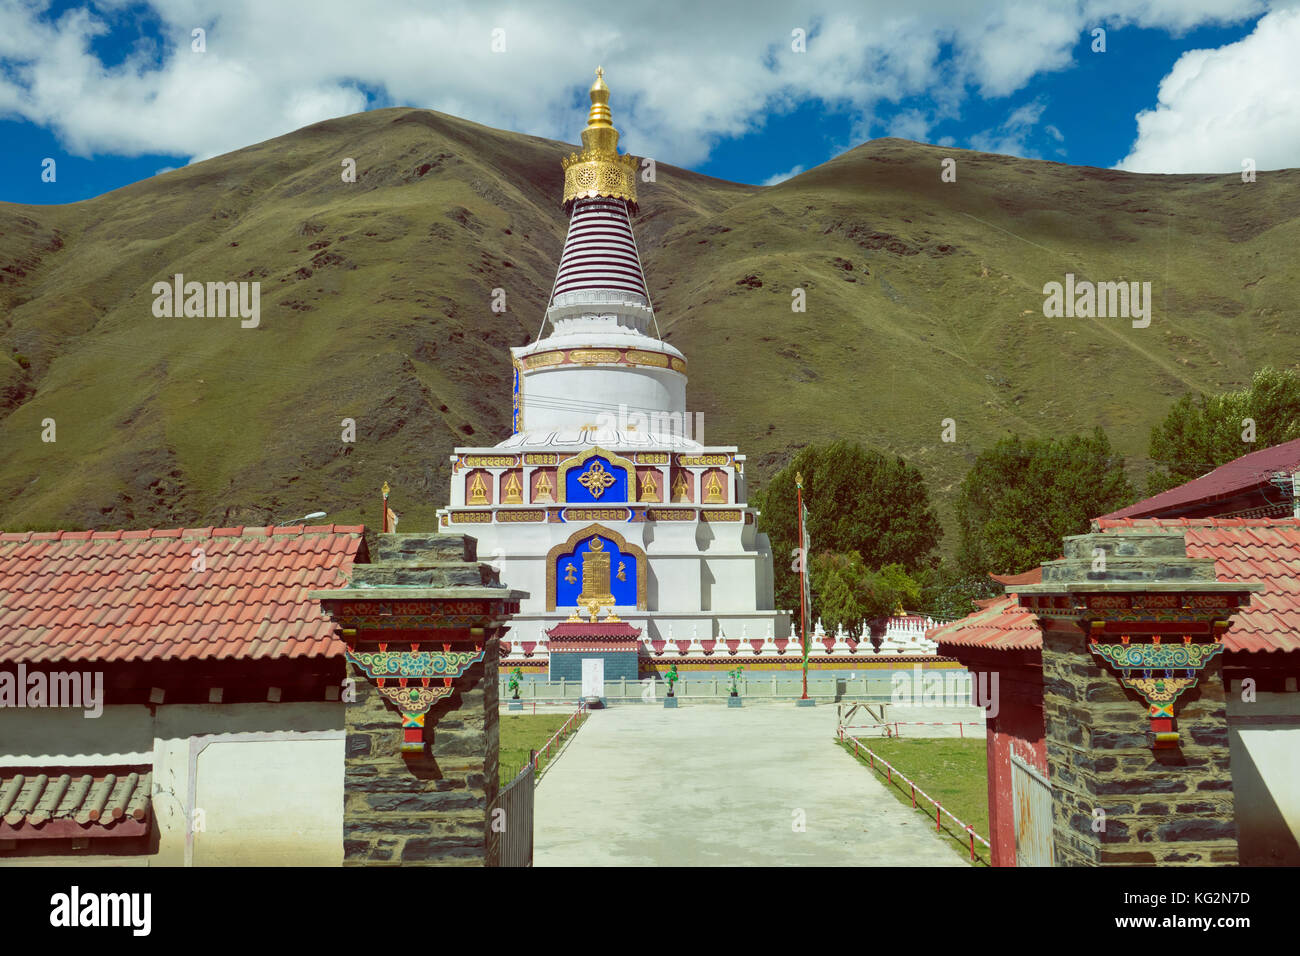 Pagoda of Buddhism in Tibet ,China Stock Photo